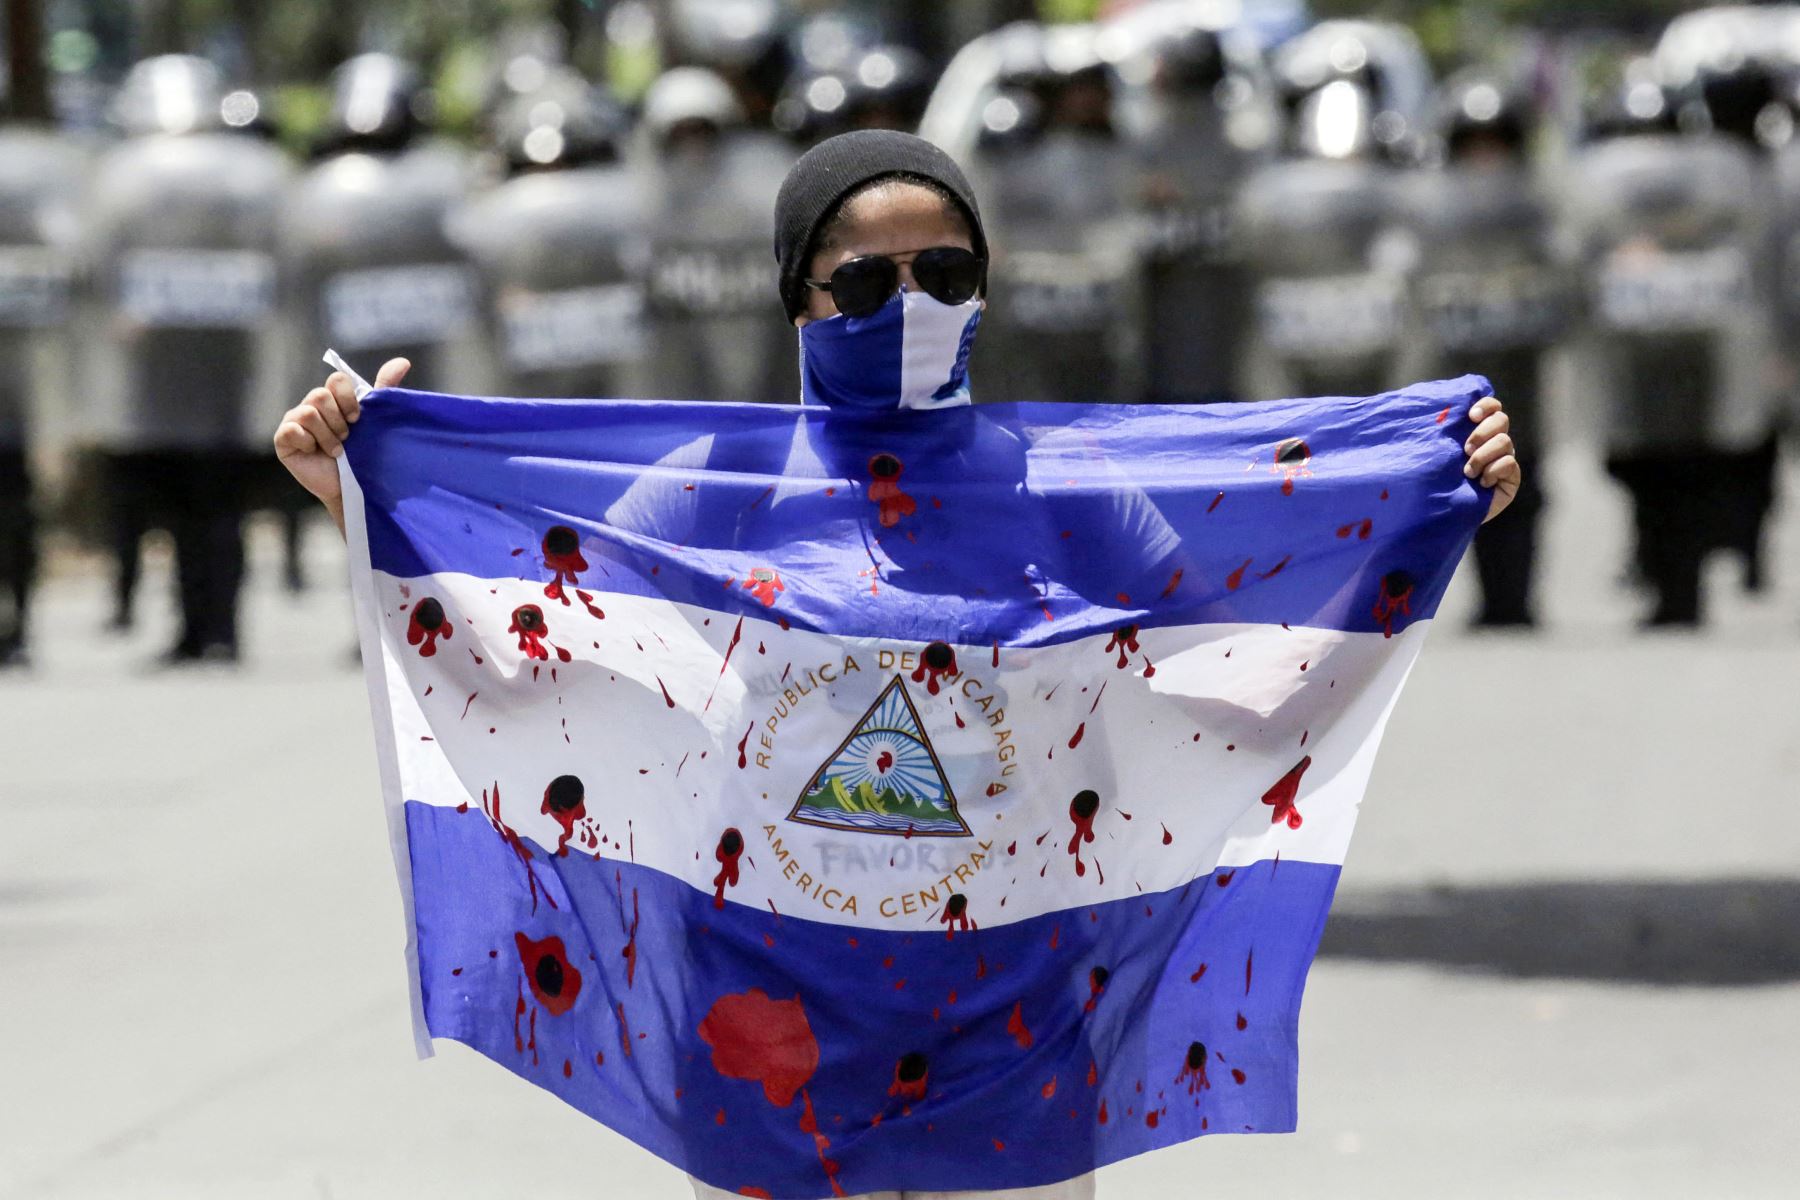 En abril de 2018, miles de nicaragüenses salieron a las calles a protestar por unas controvertidas reformas a la seguridad social, que luego se convirtieron en una exigencia de renuncia de Ortega debido a que respondió con la fuerza. Foto: AFP